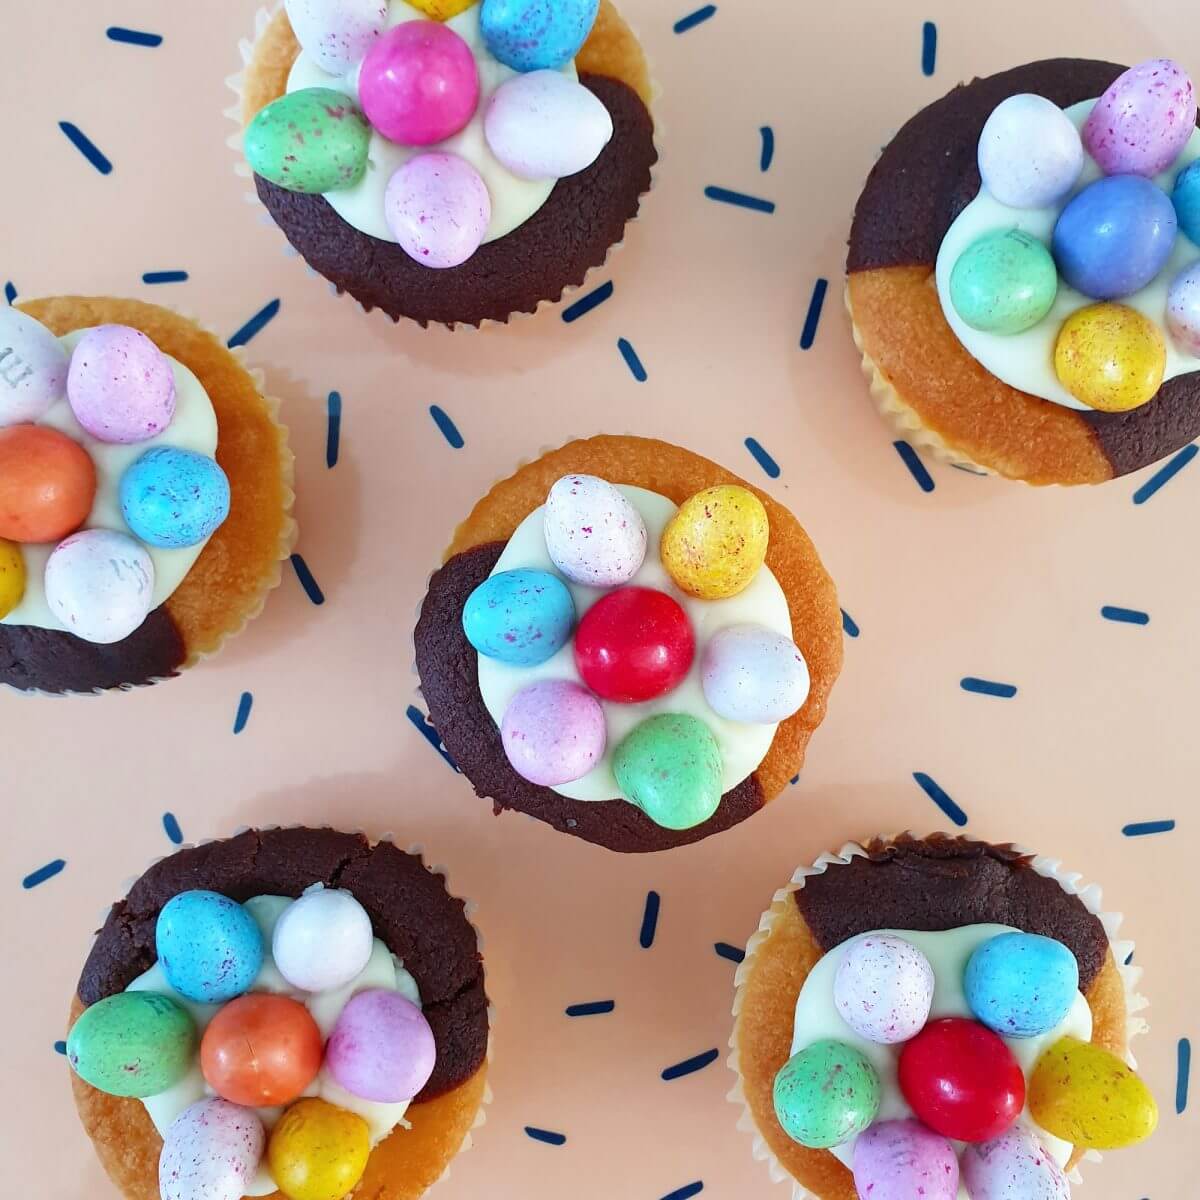 Traktatie ideeën voor kinderen: verjaardag vieren op crèche of school. Zoals versierde cupcakes.